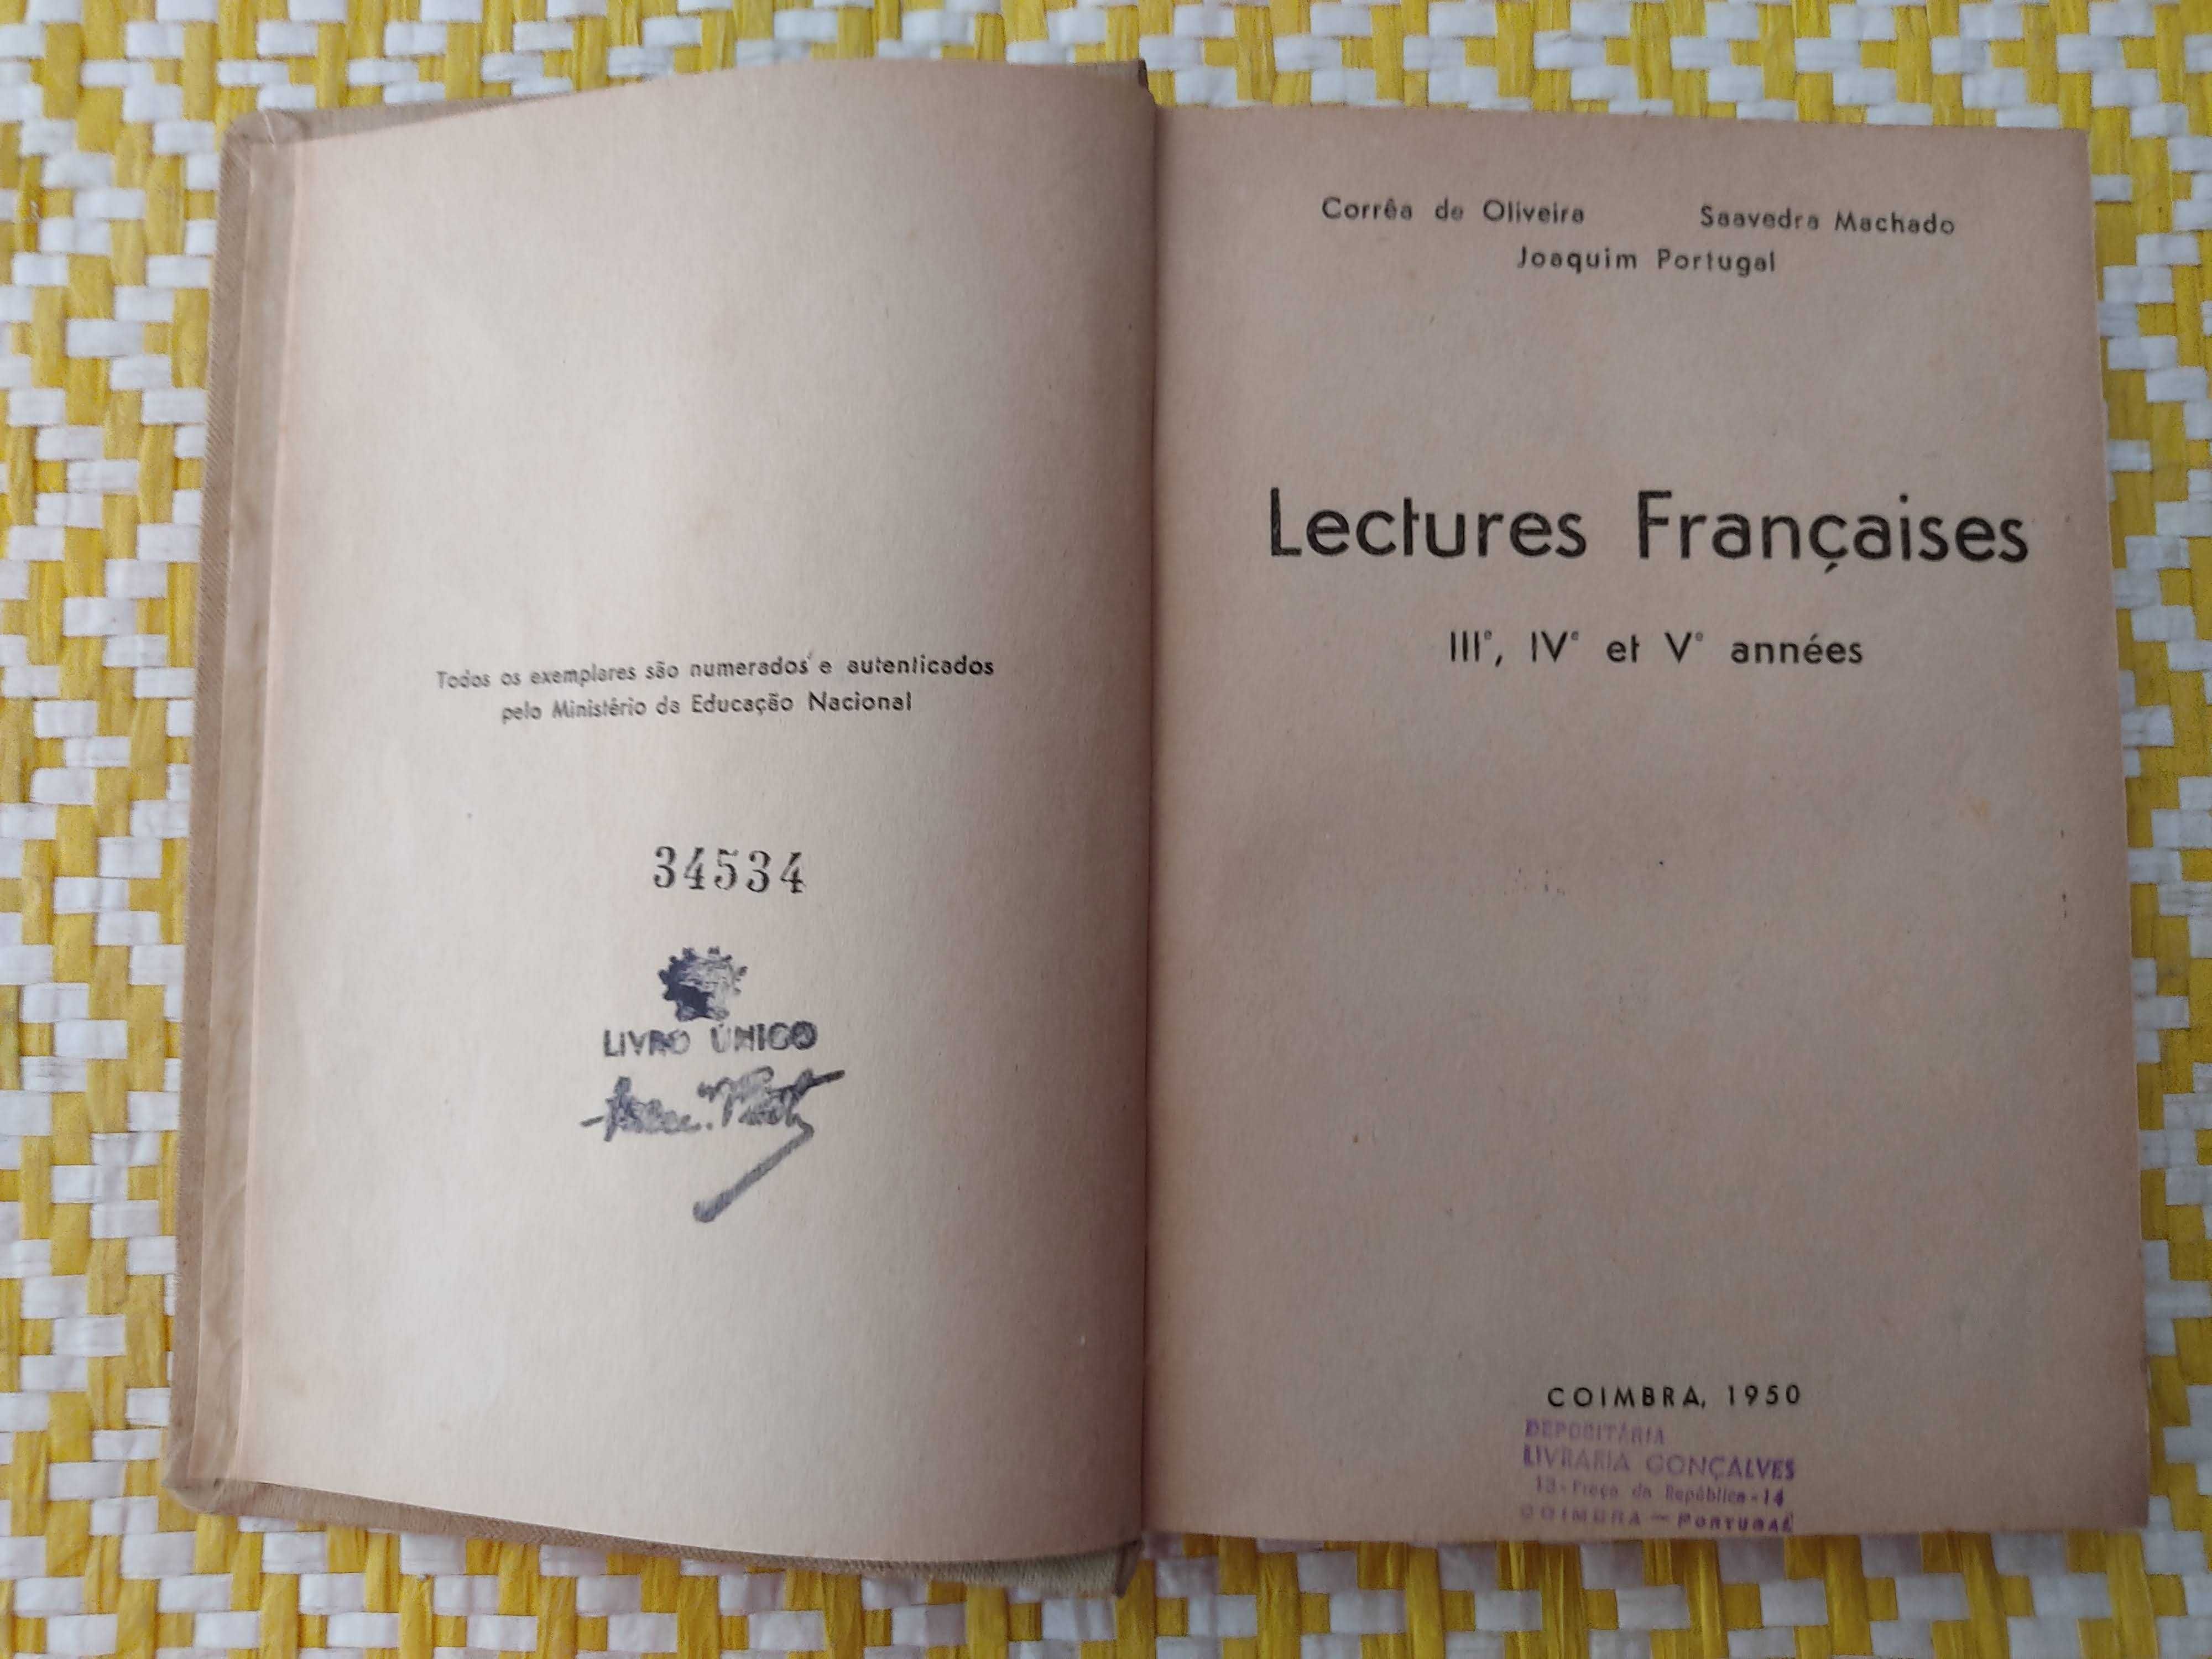 Lectures de Françaises  III, IV et V annés